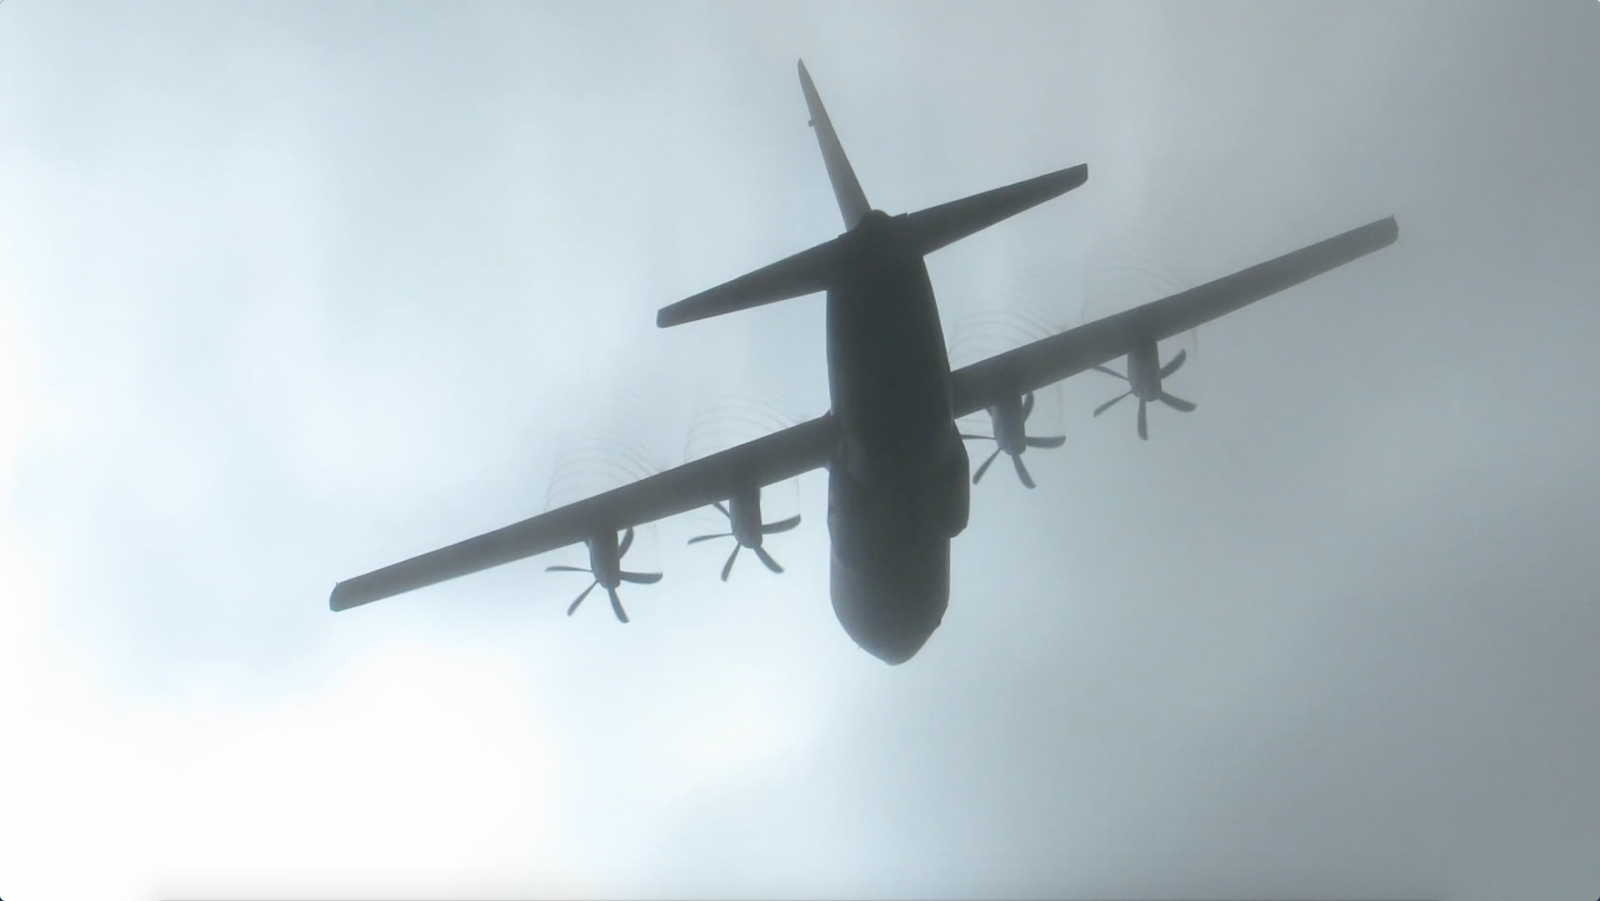 C-130J propeller blade contrails.png